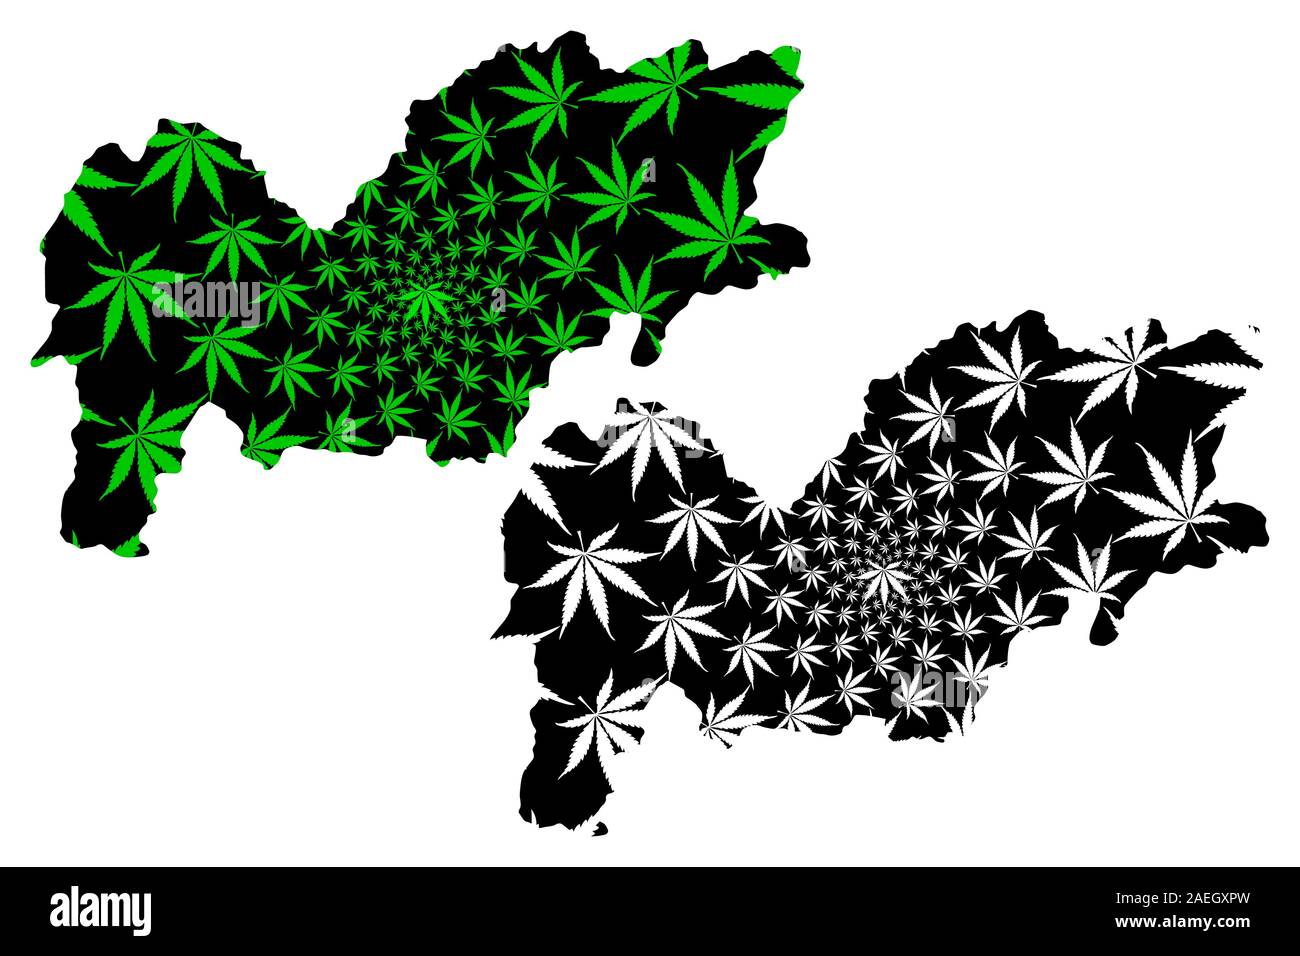 Provincia Urozgan (Repubblica Islamica dell'Afghanistan, province afghane) mappa è progettato Cannabis leaf verde e nero, Uruzgan o Oruzgan mappa mad Illustrazione Vettoriale